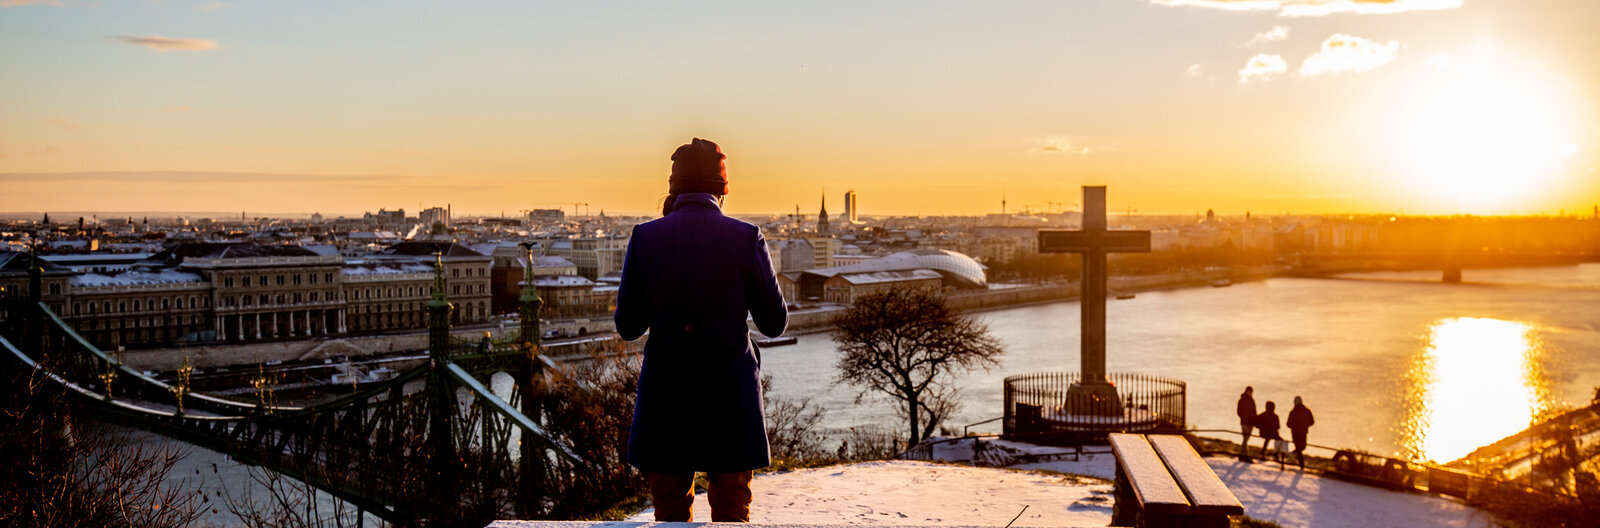 Egynapos kalandozás a téli Budapesten, ha élményeket gyűjtenél